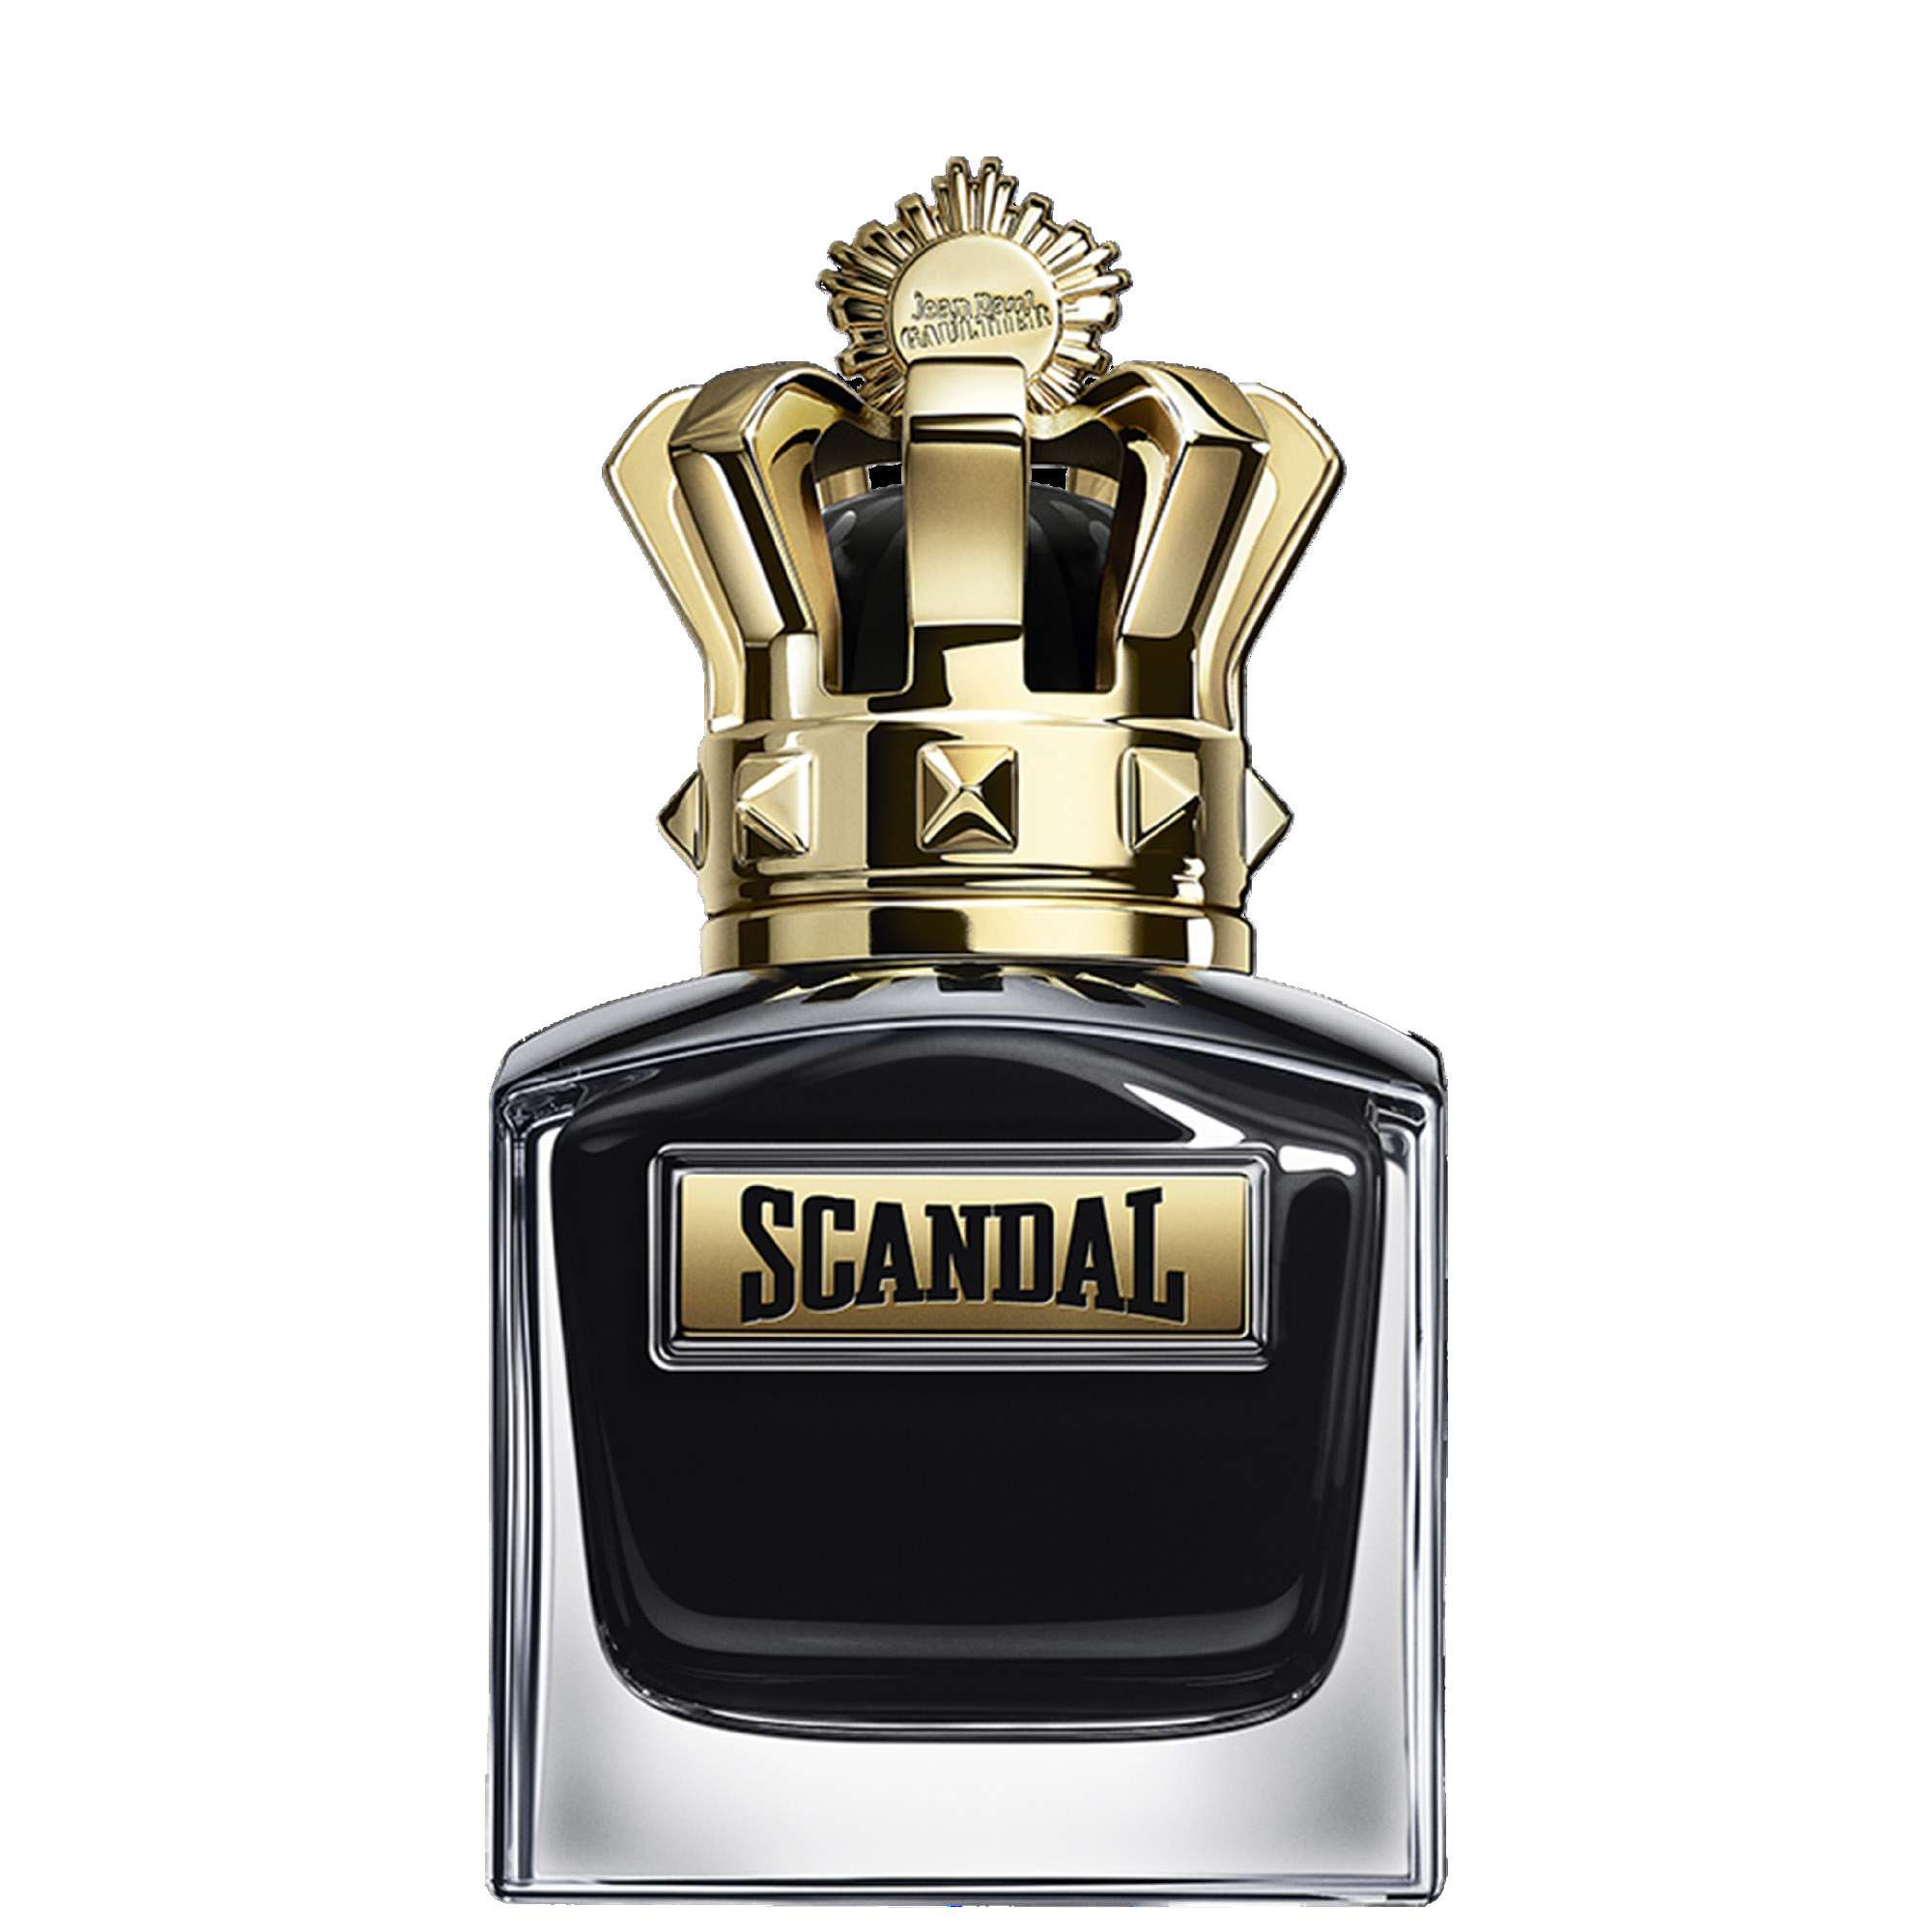 Photos - Women's Fragrance Jean Paul Gaultier Scandal Pour Homme Le Parfum Eau de Parfum 50ml 